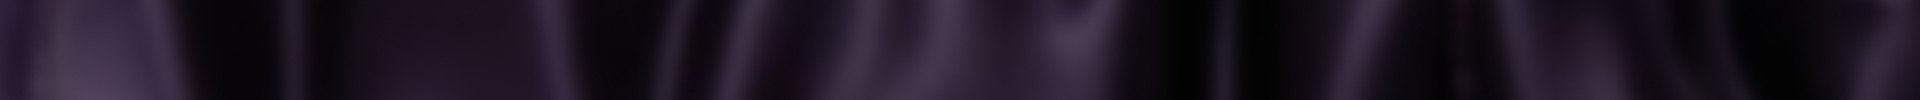 Dark purple background